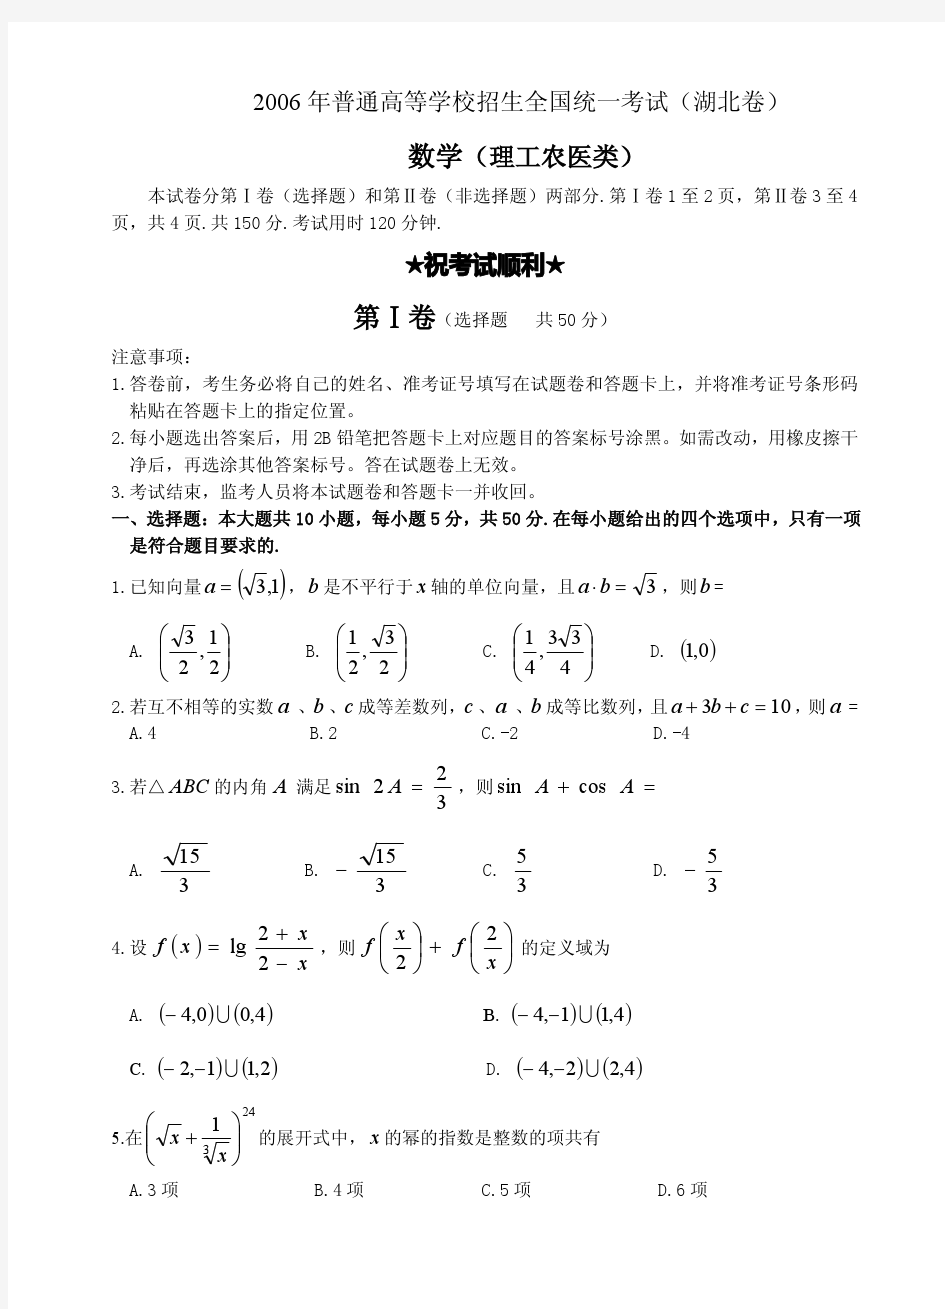 2006年高考理科数学试题及答案(湖北卷)